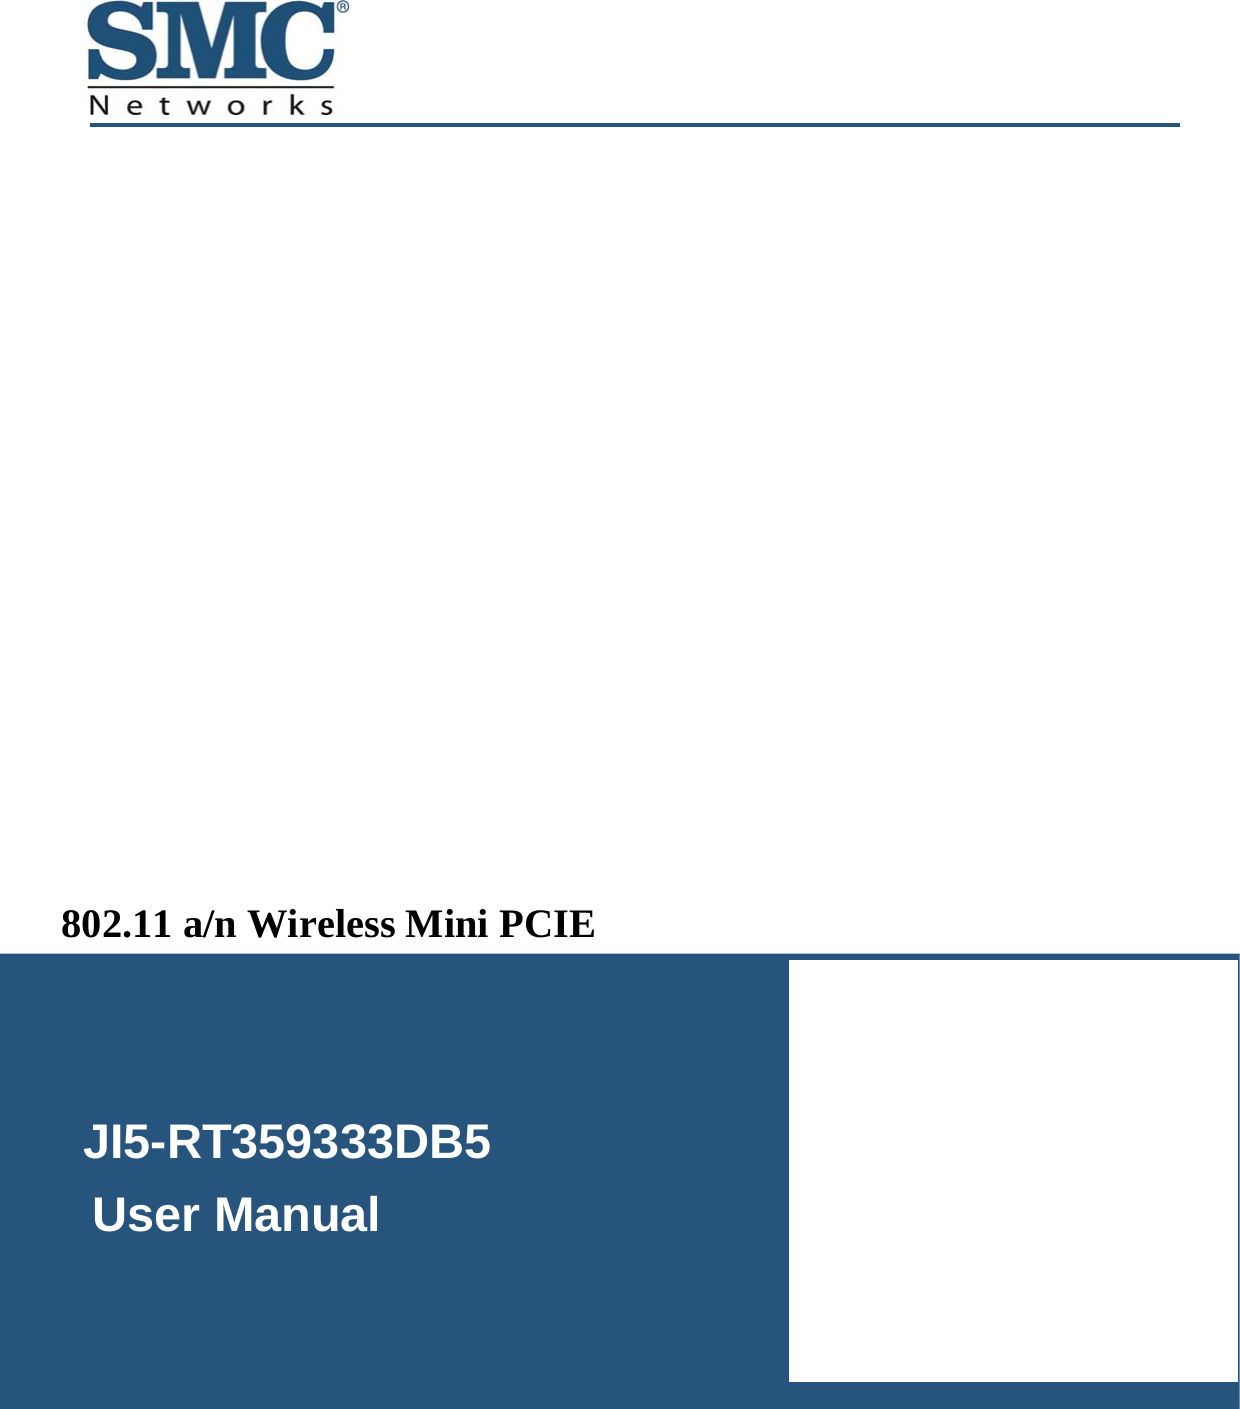   JI5-RT359333DB5     User Manual  802.11 a/n Wireless Mini PCIE  